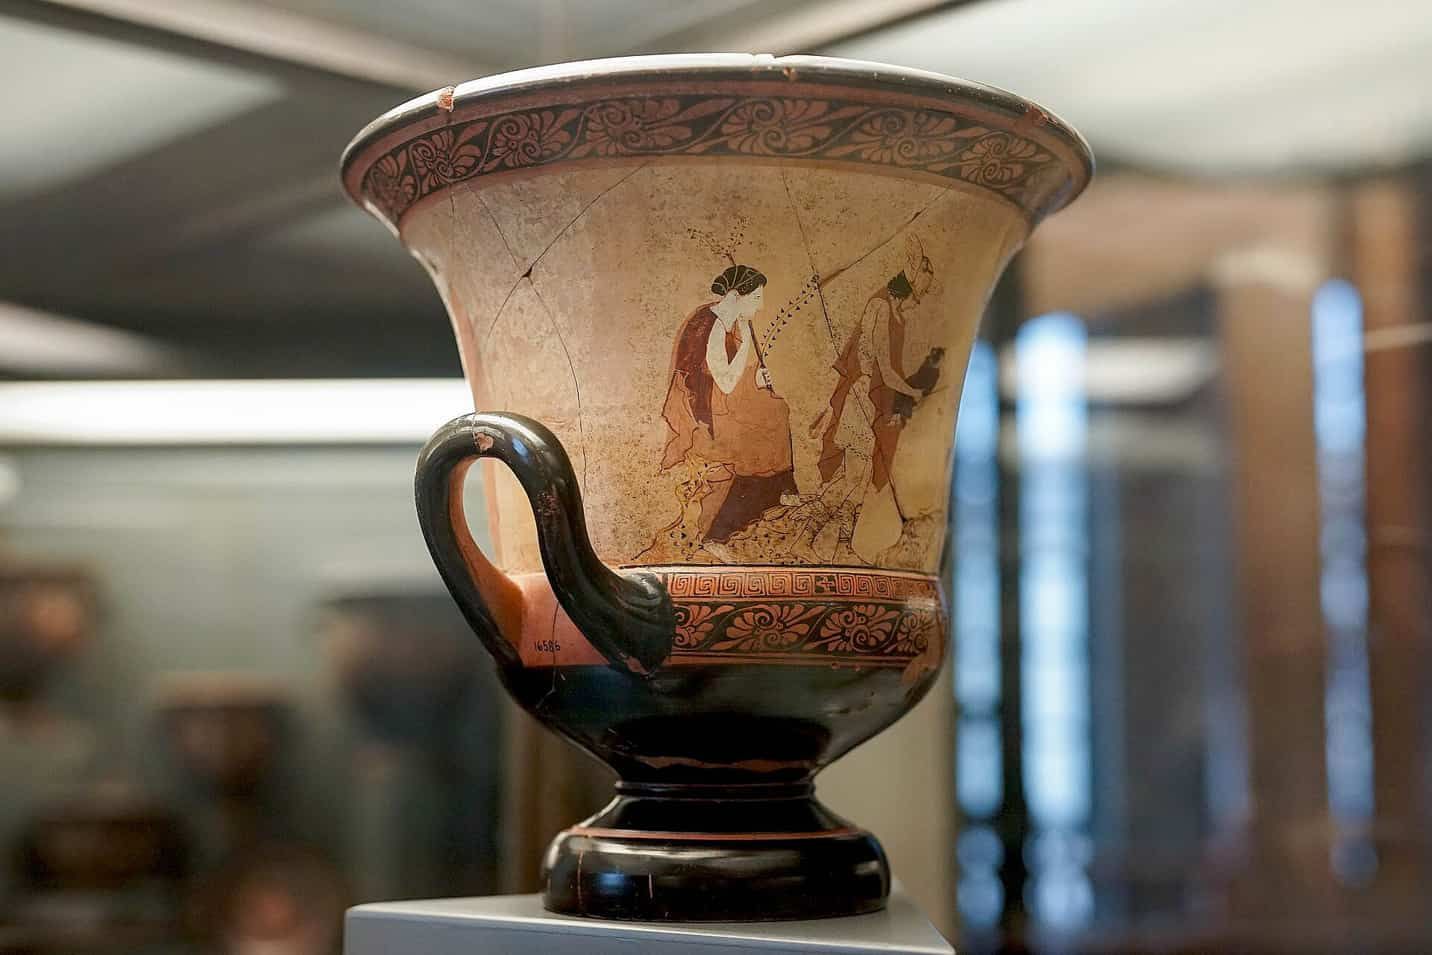 Pittore della phiale di Boston, Hermes affida Dioniso a Sileno e alle Ninfe, sul retro tre Muse. 440-435 a.C. 